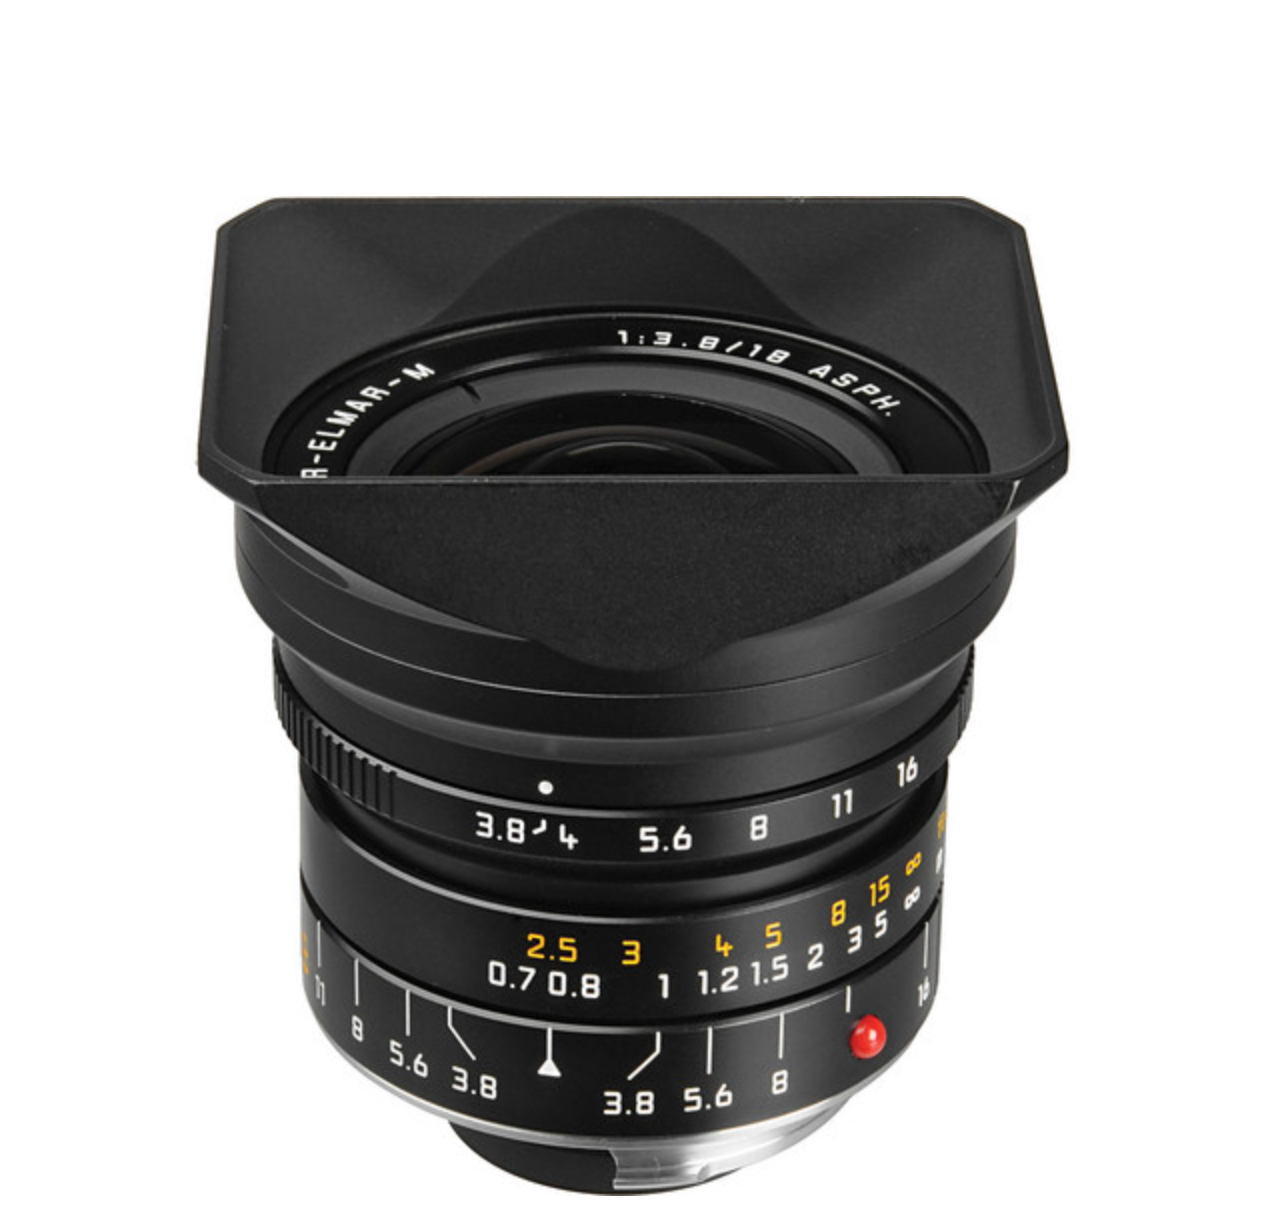 Leica Super-Elmar-M 18mm f/3.8 ASPH. Lens